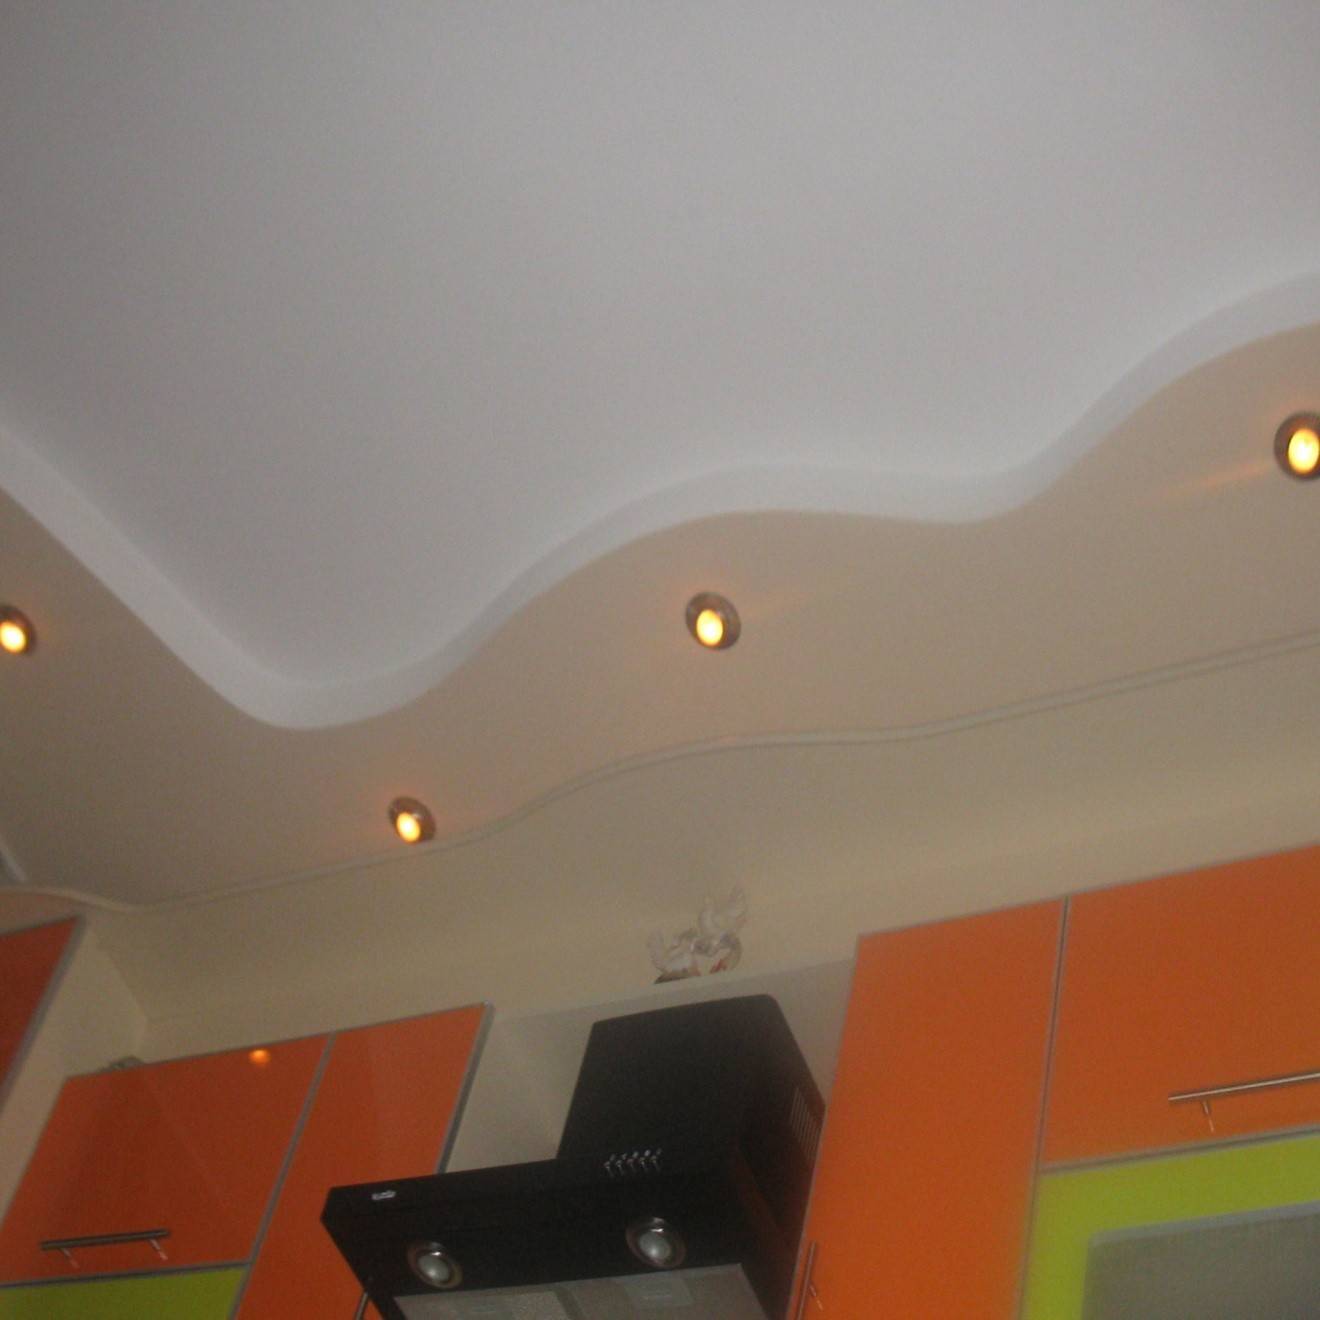 Фото двухуровневых потолков на кухне из гипсокартона, идеи, требования, монтаж